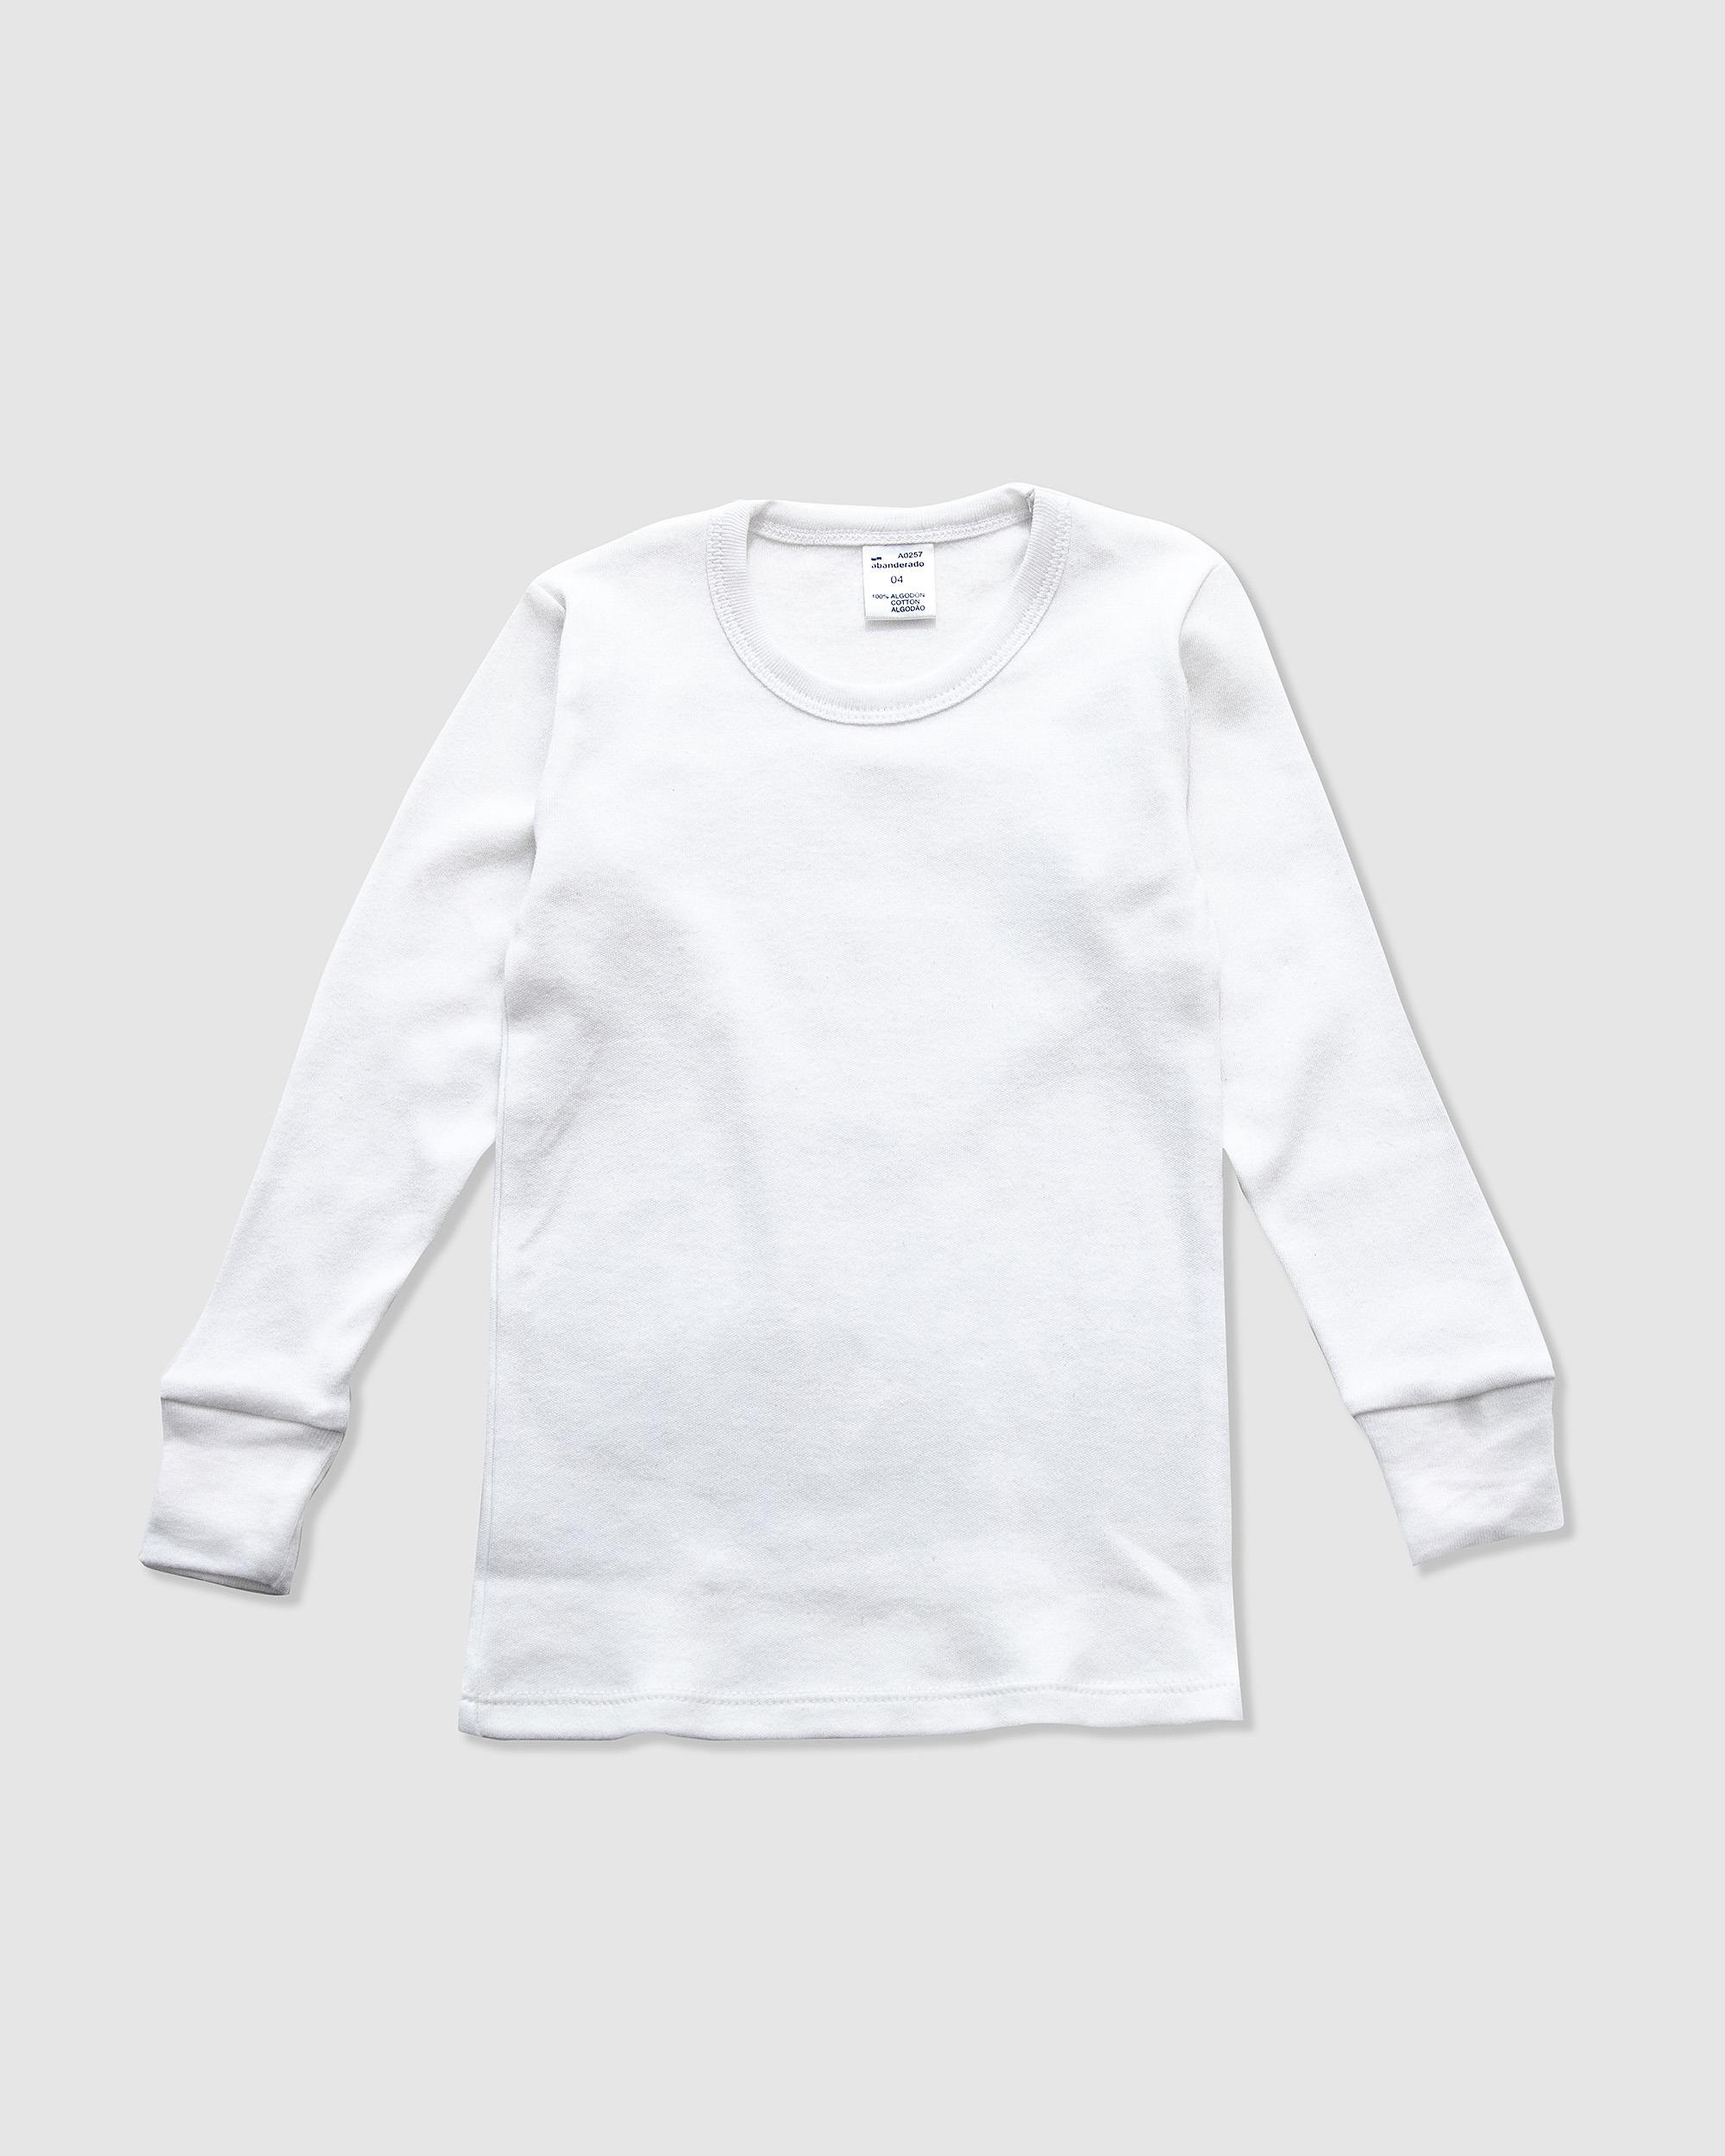 Camiseta interior térmica de hombre en blanco de manga corta · Abanderado ·  El Corte Inglés